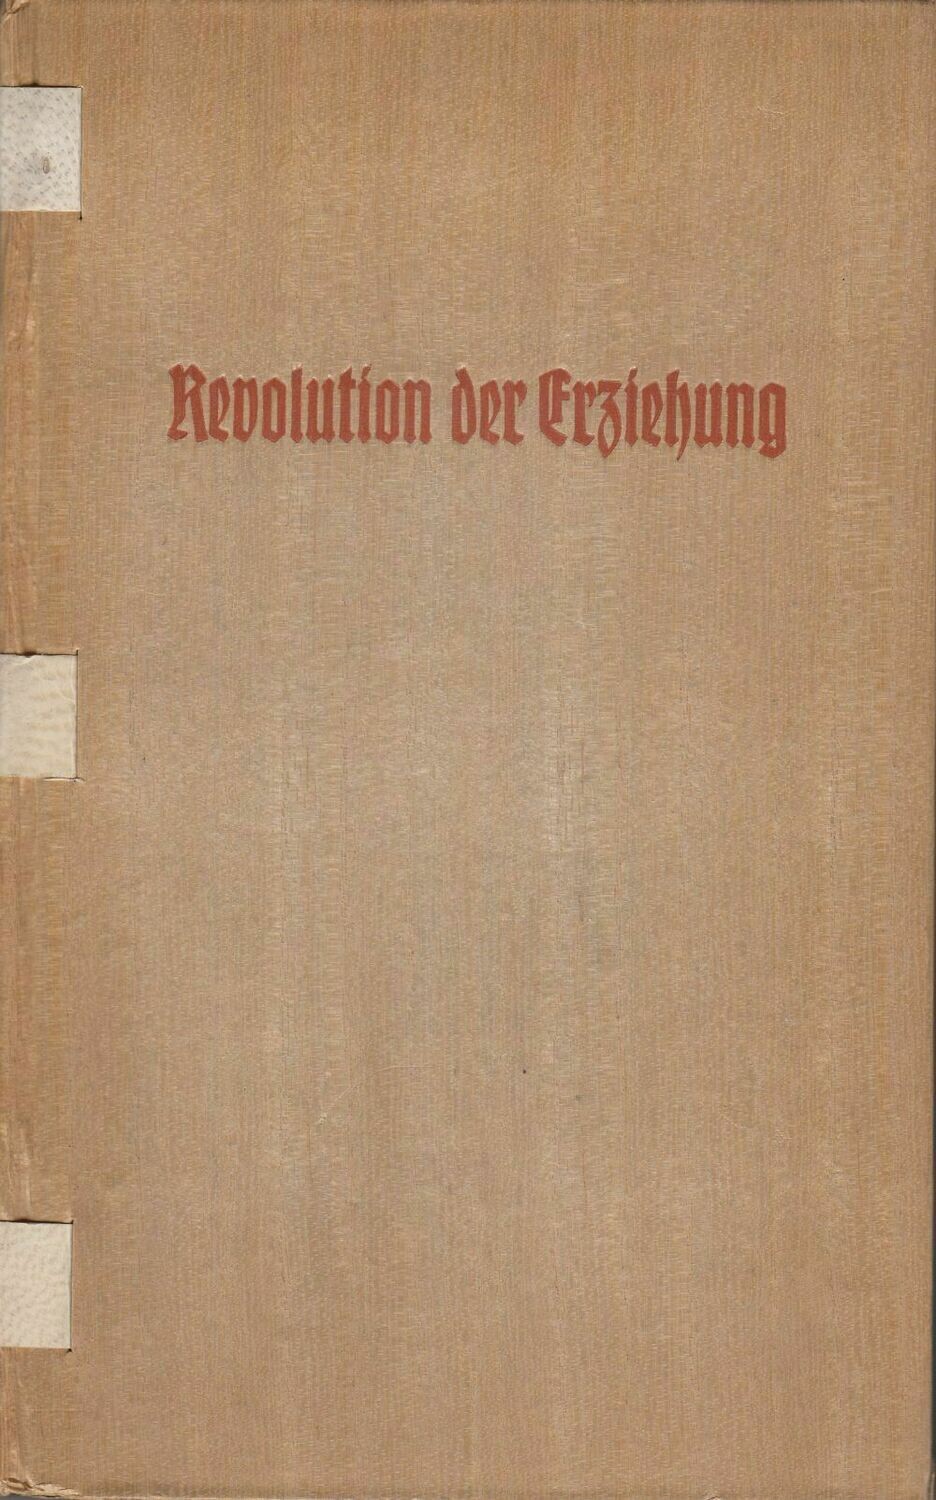 von Schirach: Revolution der Erziehung - Sonderausgabe (Einband furniert) aus dem Jahr 1938 mit Widmungsblatt